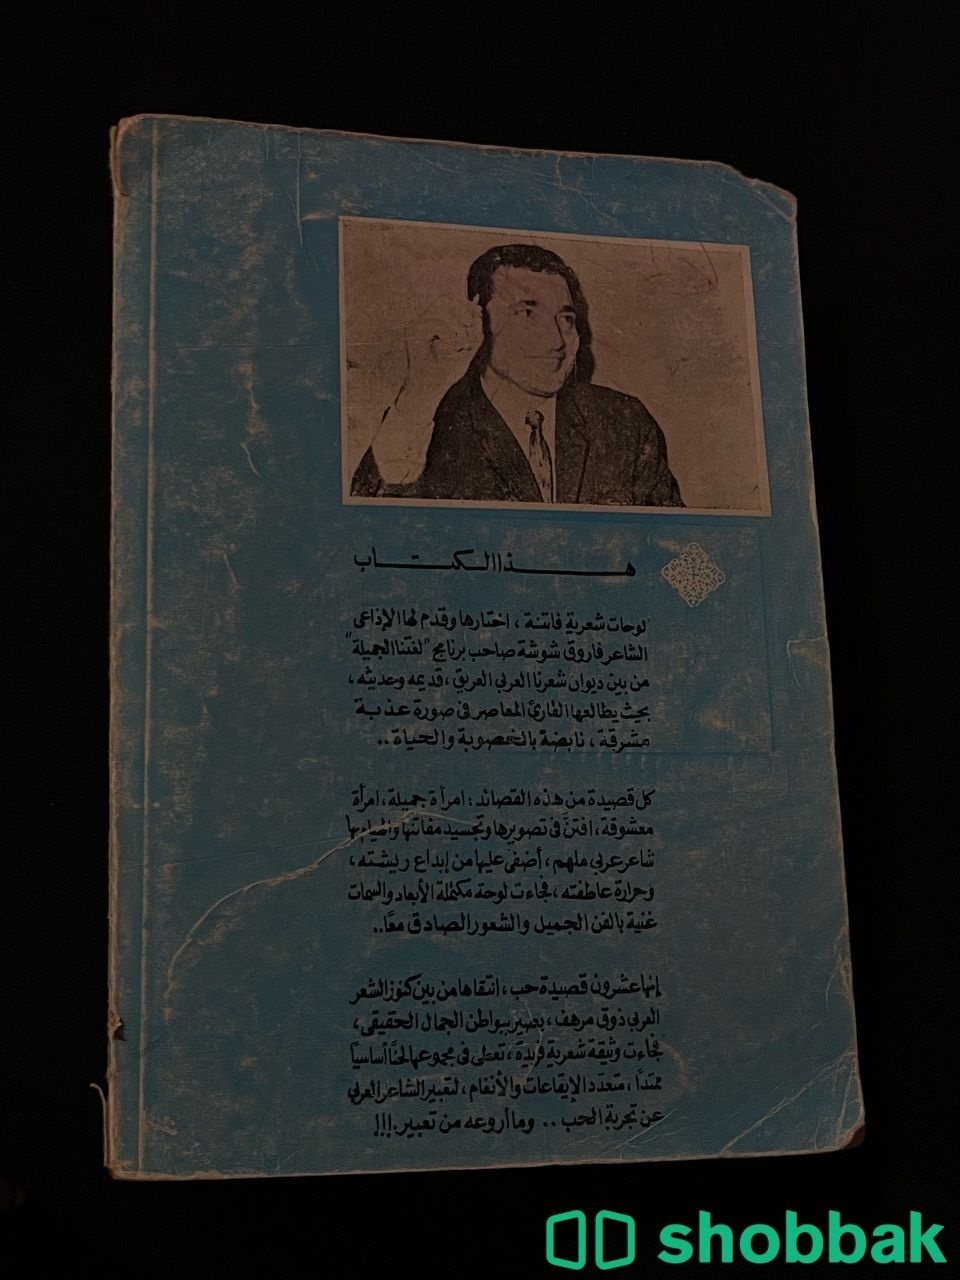 كتاب قديم لفاروق شوشة Shobbak Saudi Arabia